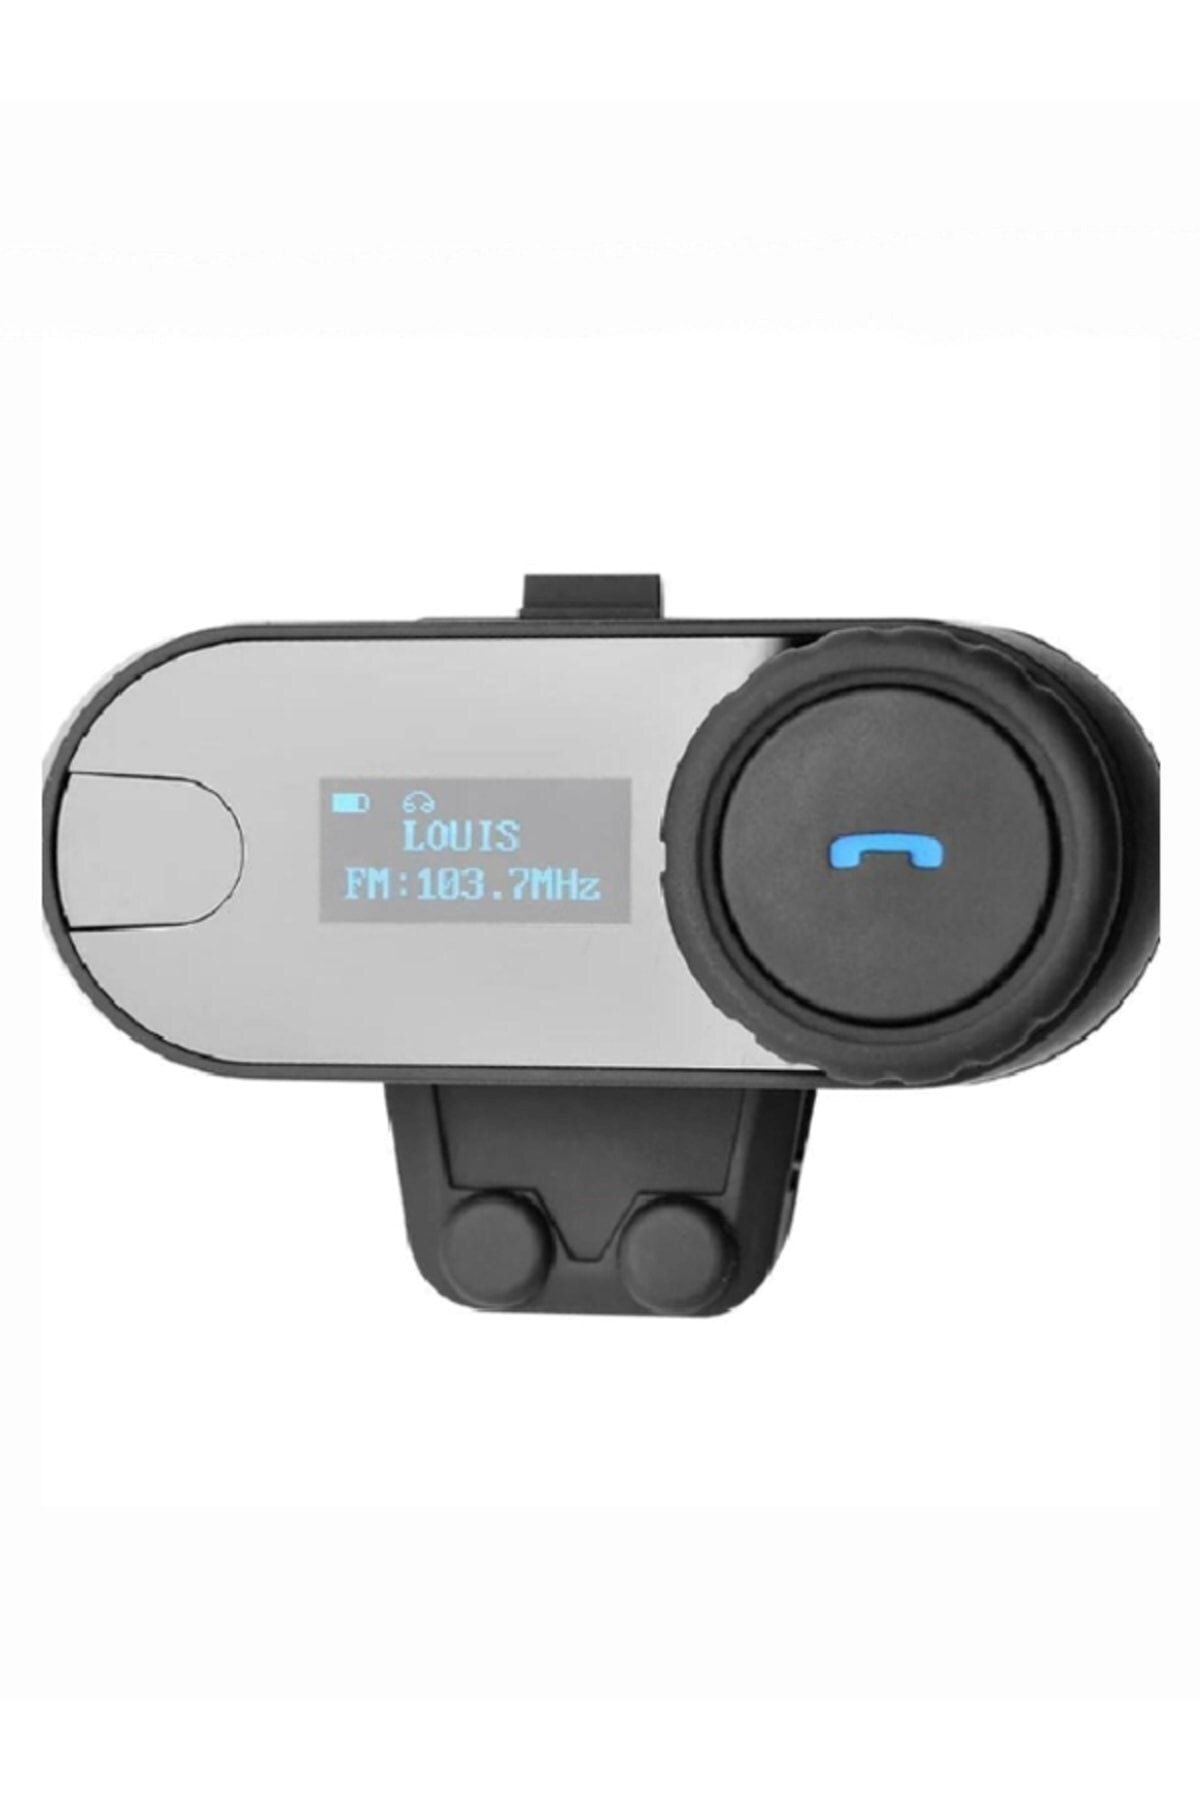 pazariz 1km Telsiz Intercom Motosiklet Bluetooth Su Geçirmez Kask Kulaklık Lcd-ekran Fm-radyo